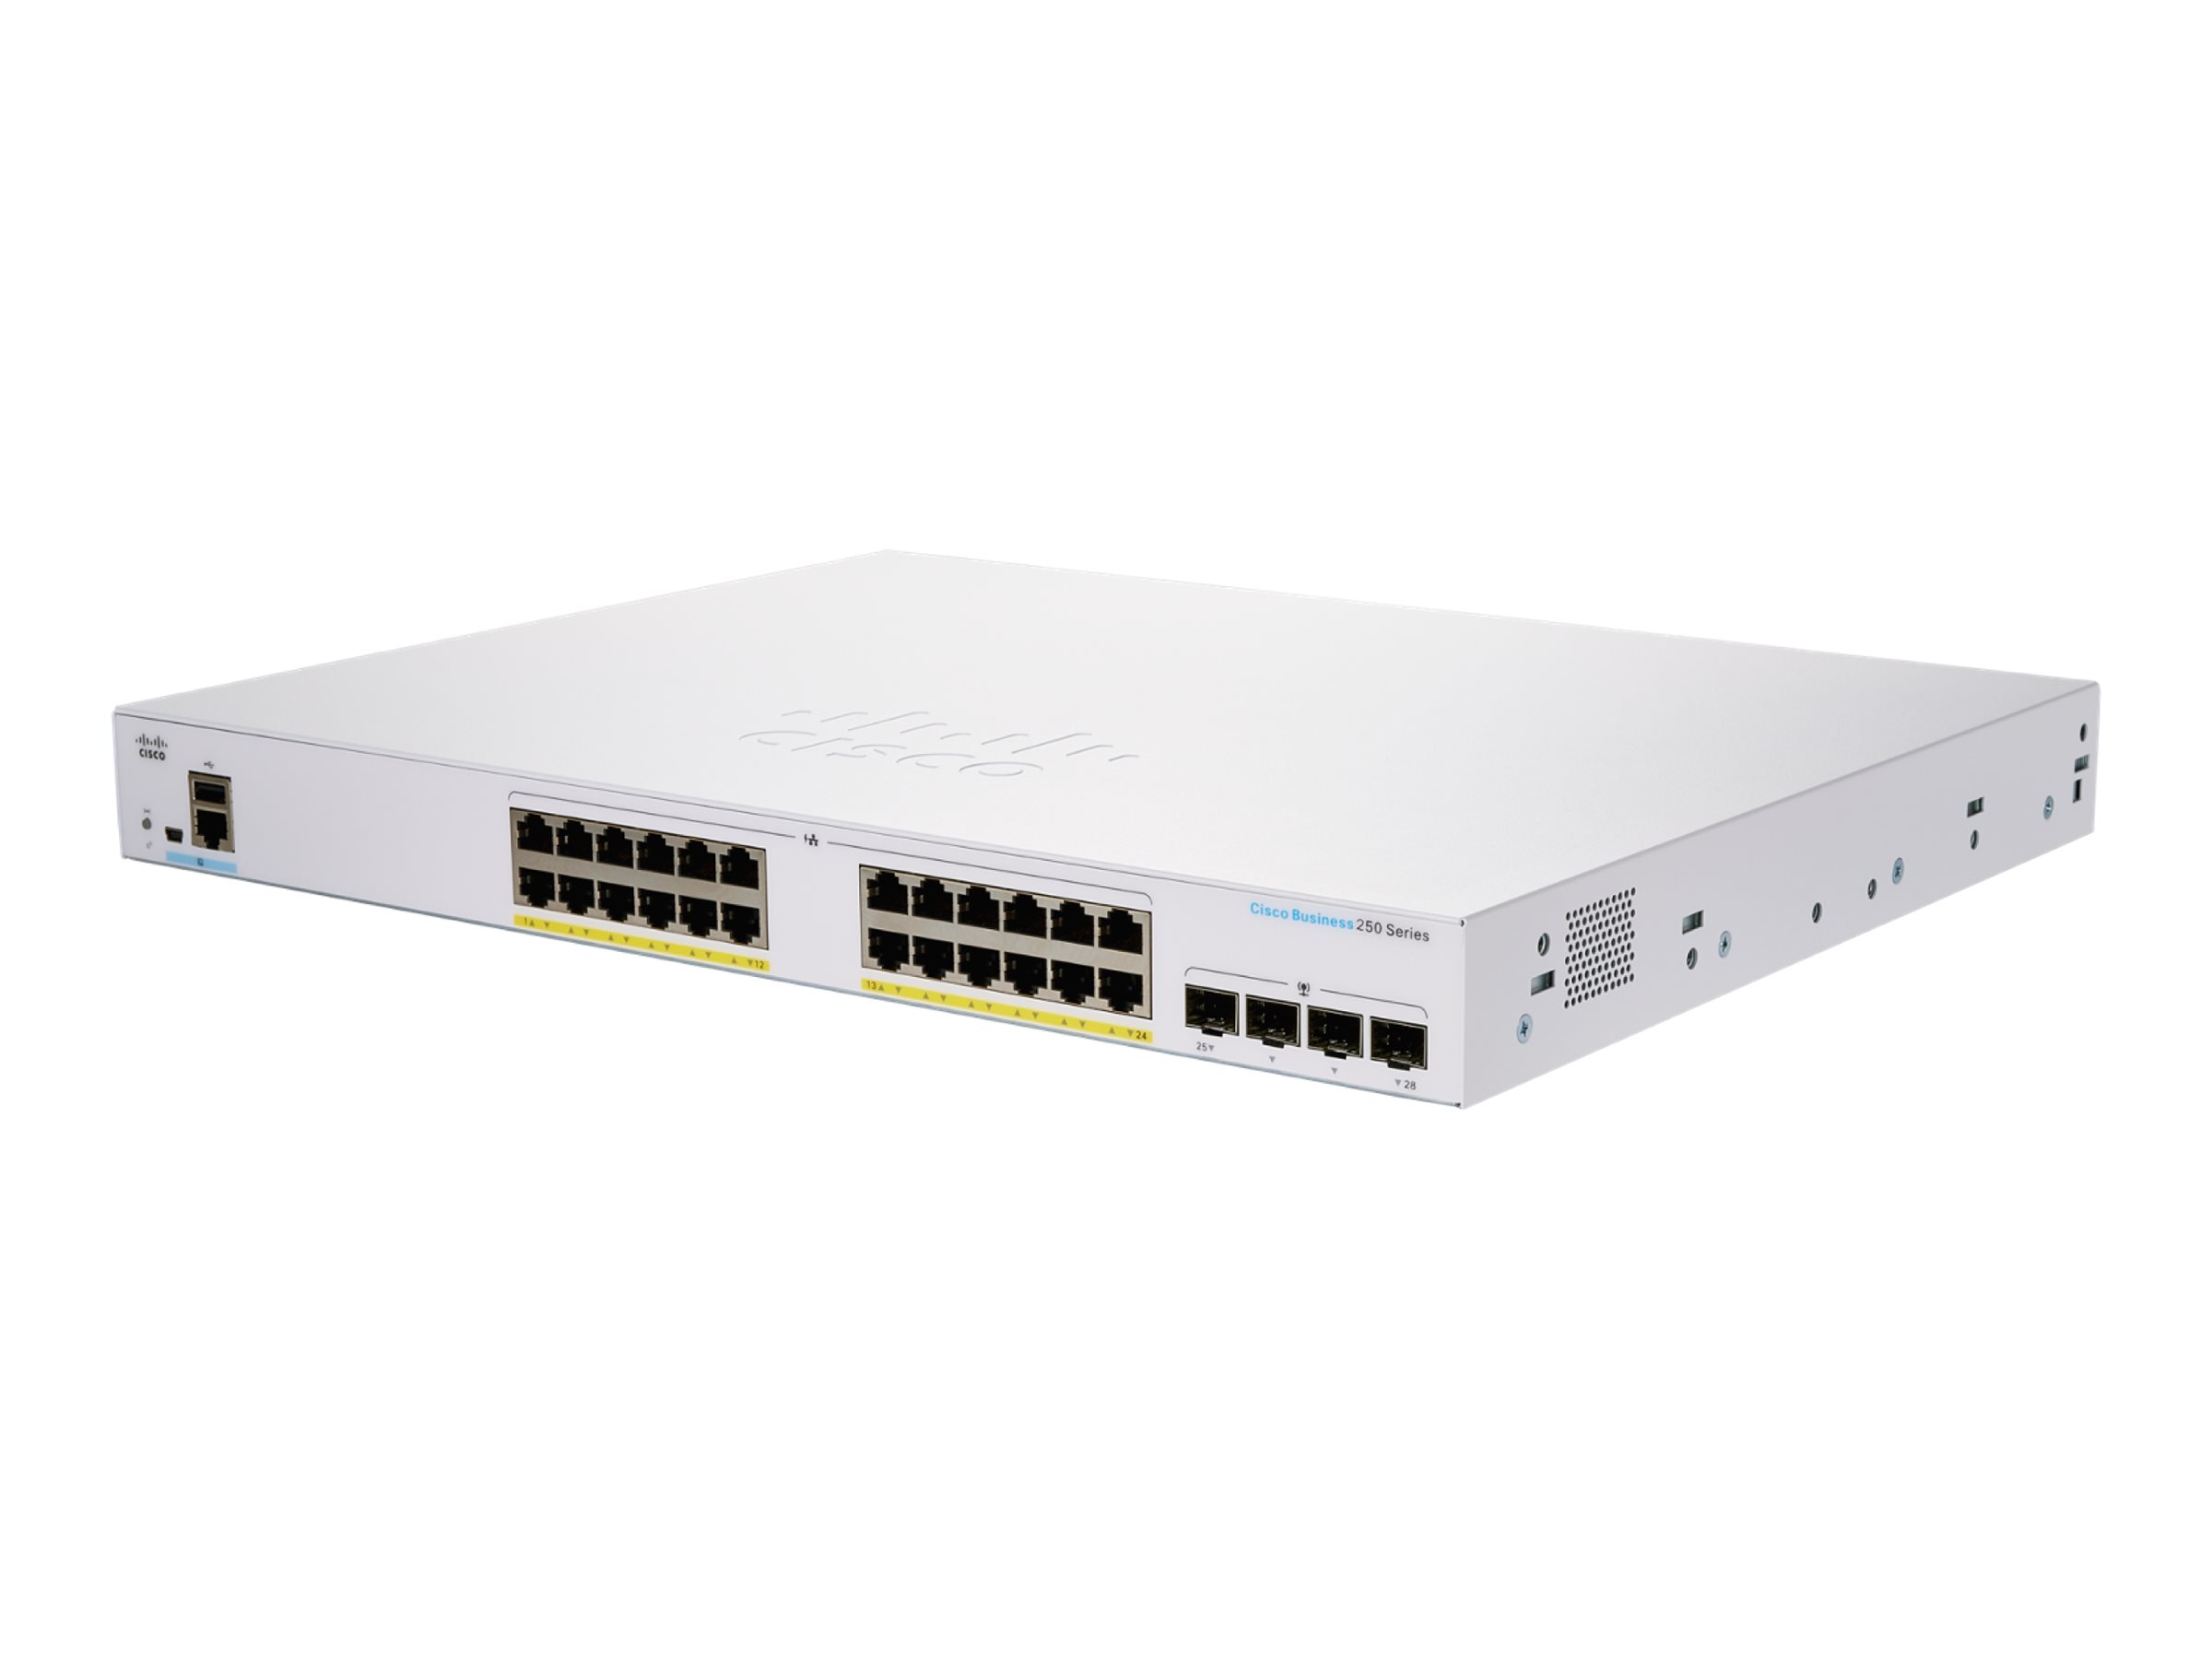 Cisco Business 250 Series CBS250-24FP-4G - Commutateur - C3 - intelligent - 24 x 10/100/1000 (PoE+) + 4 x Gigabit SFP - Montable sur rack - PoE+ (370 W) - CBS250-24FP-4G-EU - Concentrateurs et commutateurs gigabit